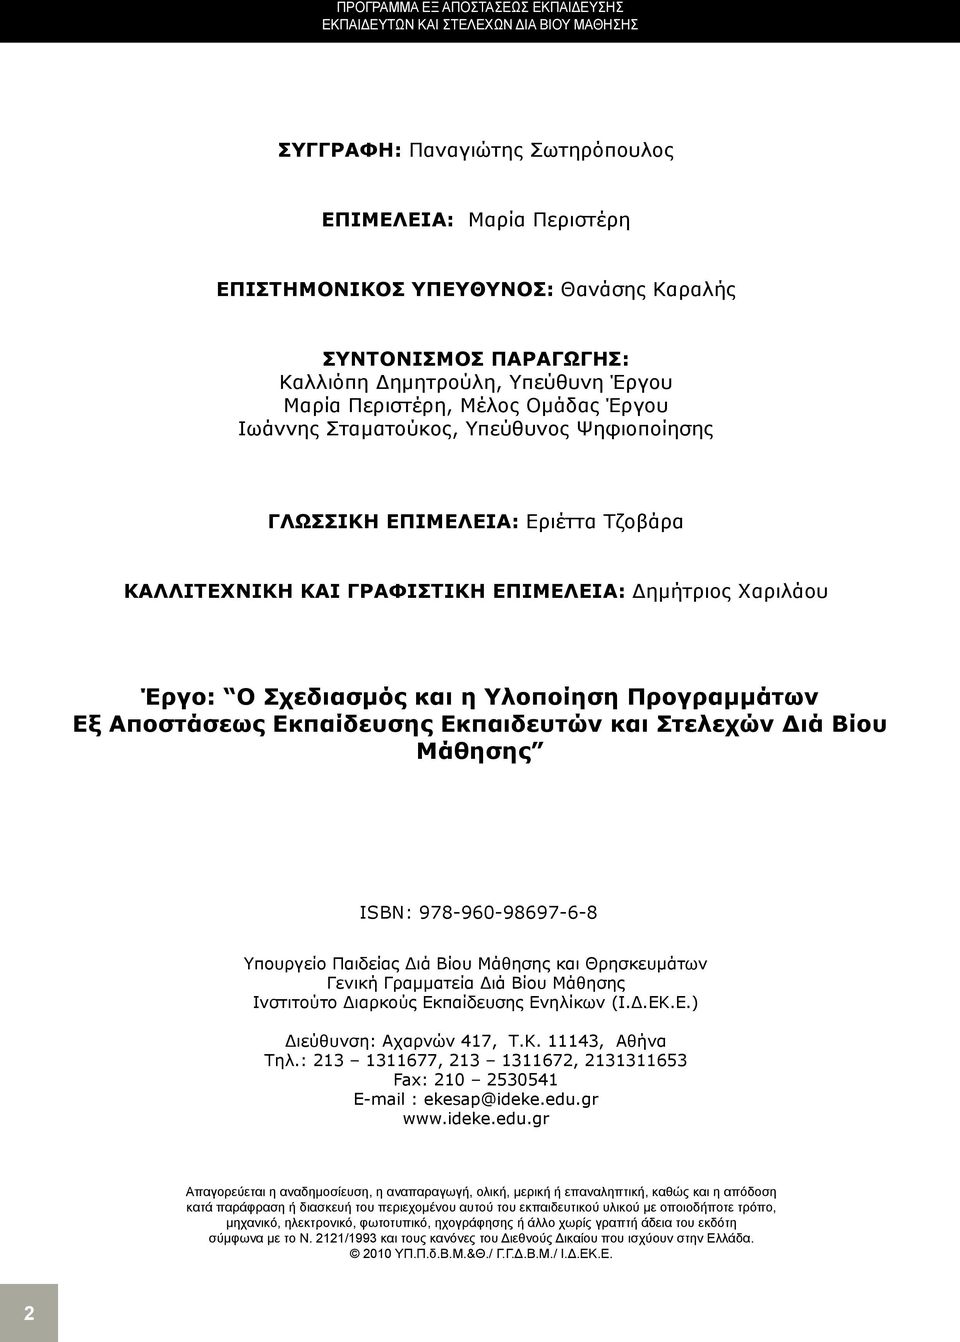 ΕΠΙΜΕΛΕΙΑ: Δημήτριος Χαριλάου Έργο: Ο Σχεδιασμός και η Υλοποίηση Προγραμμάτων Εξ Αποστάσεως Εκπαίδευσης Εκπαιδευτών και Στελεχών Διά Βίου Μάθησης ISBN: 978-960-98697-6-8 Υπουργείο Παιδείας Διά Βίου